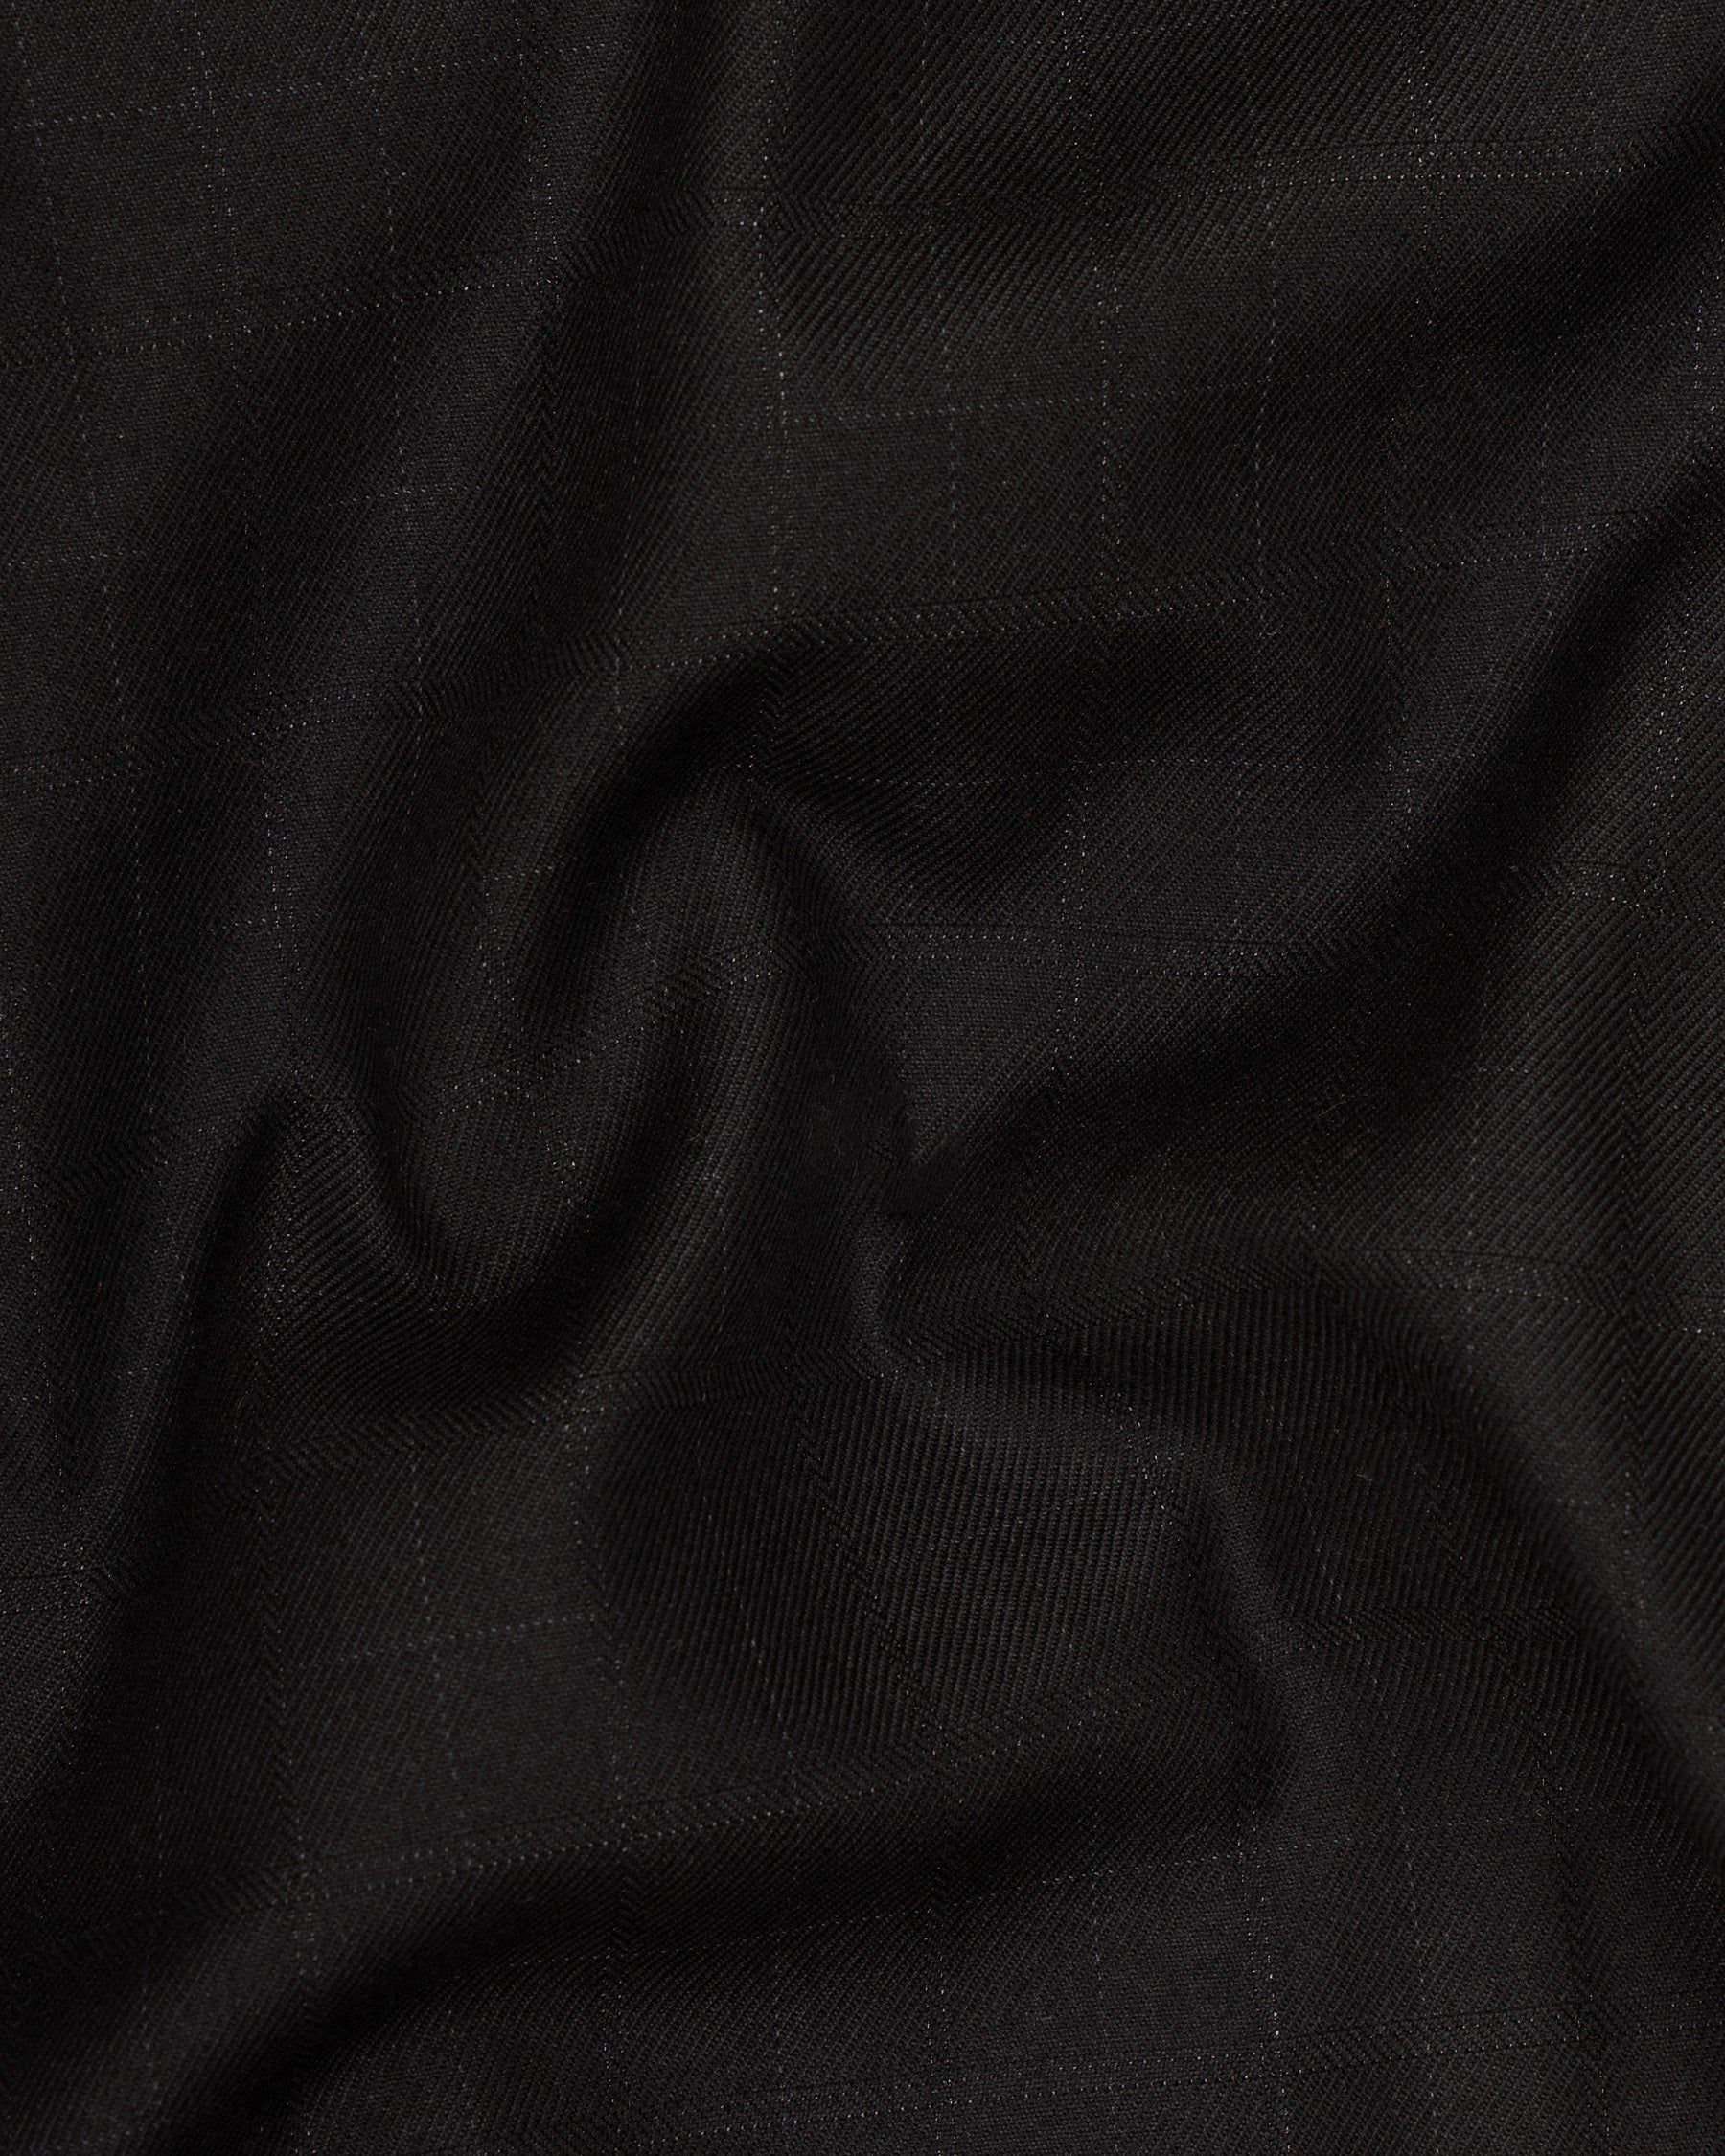 Jade Black Wool Rich Waistcoat V1571-36, V1571-38, V1571-40, V1571-42, V1571-44, V1571-46, V1571-48, V1571-50, V1571-52, V1571-54, V1571-56, V1571-58, V1571-60